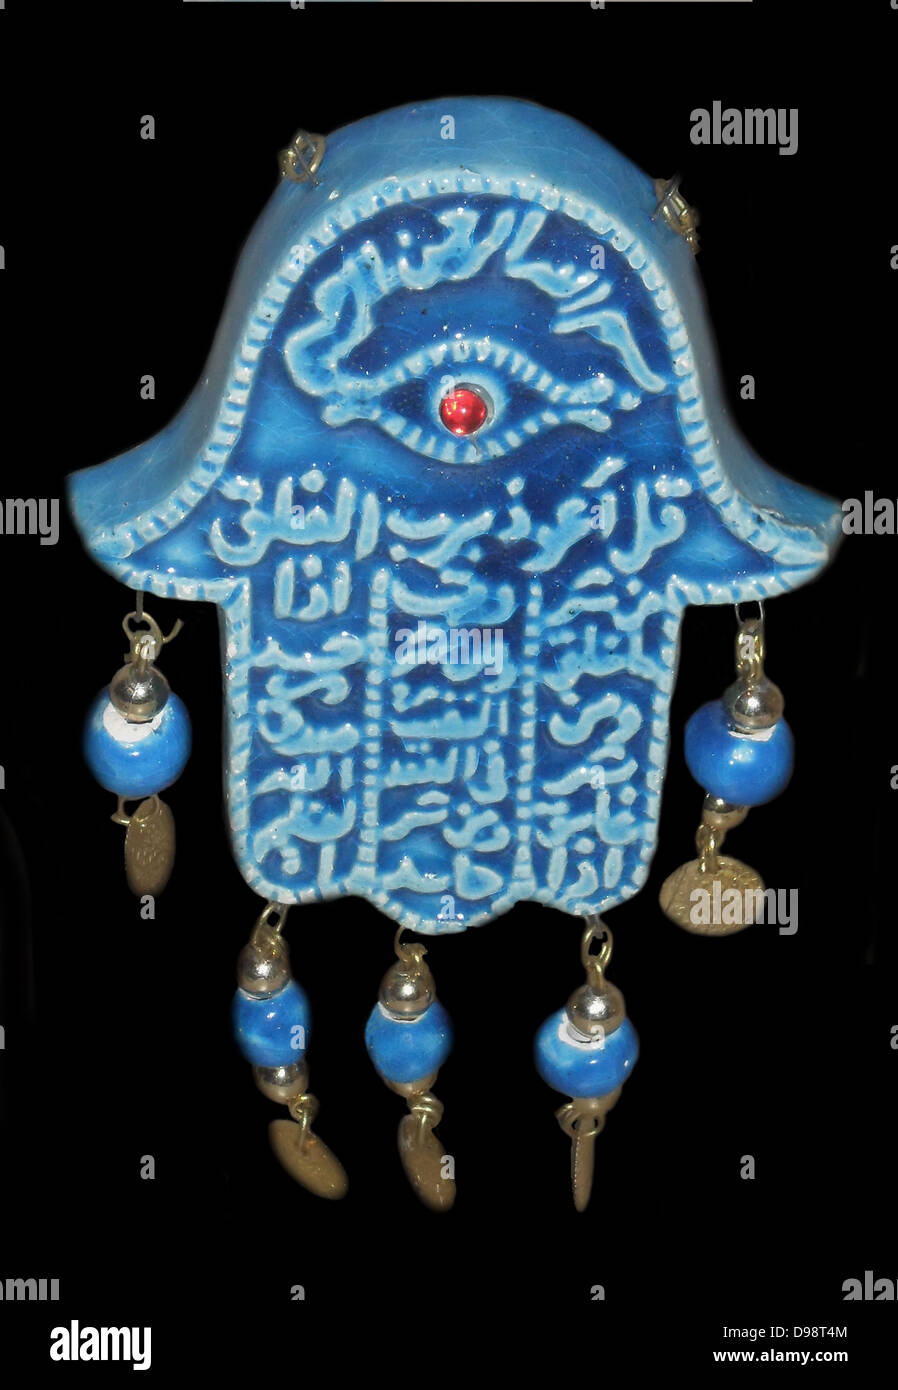 Die Hand von Fatima. Silberlegierung Metallarbeiten aus Marokko. Anfang des 20. Jahrhunderts. Islamische Kunst. die Finger die Fünf Säulen des Islam vertreten. die Hand weg Stationen den bösen Blick. Stockfoto